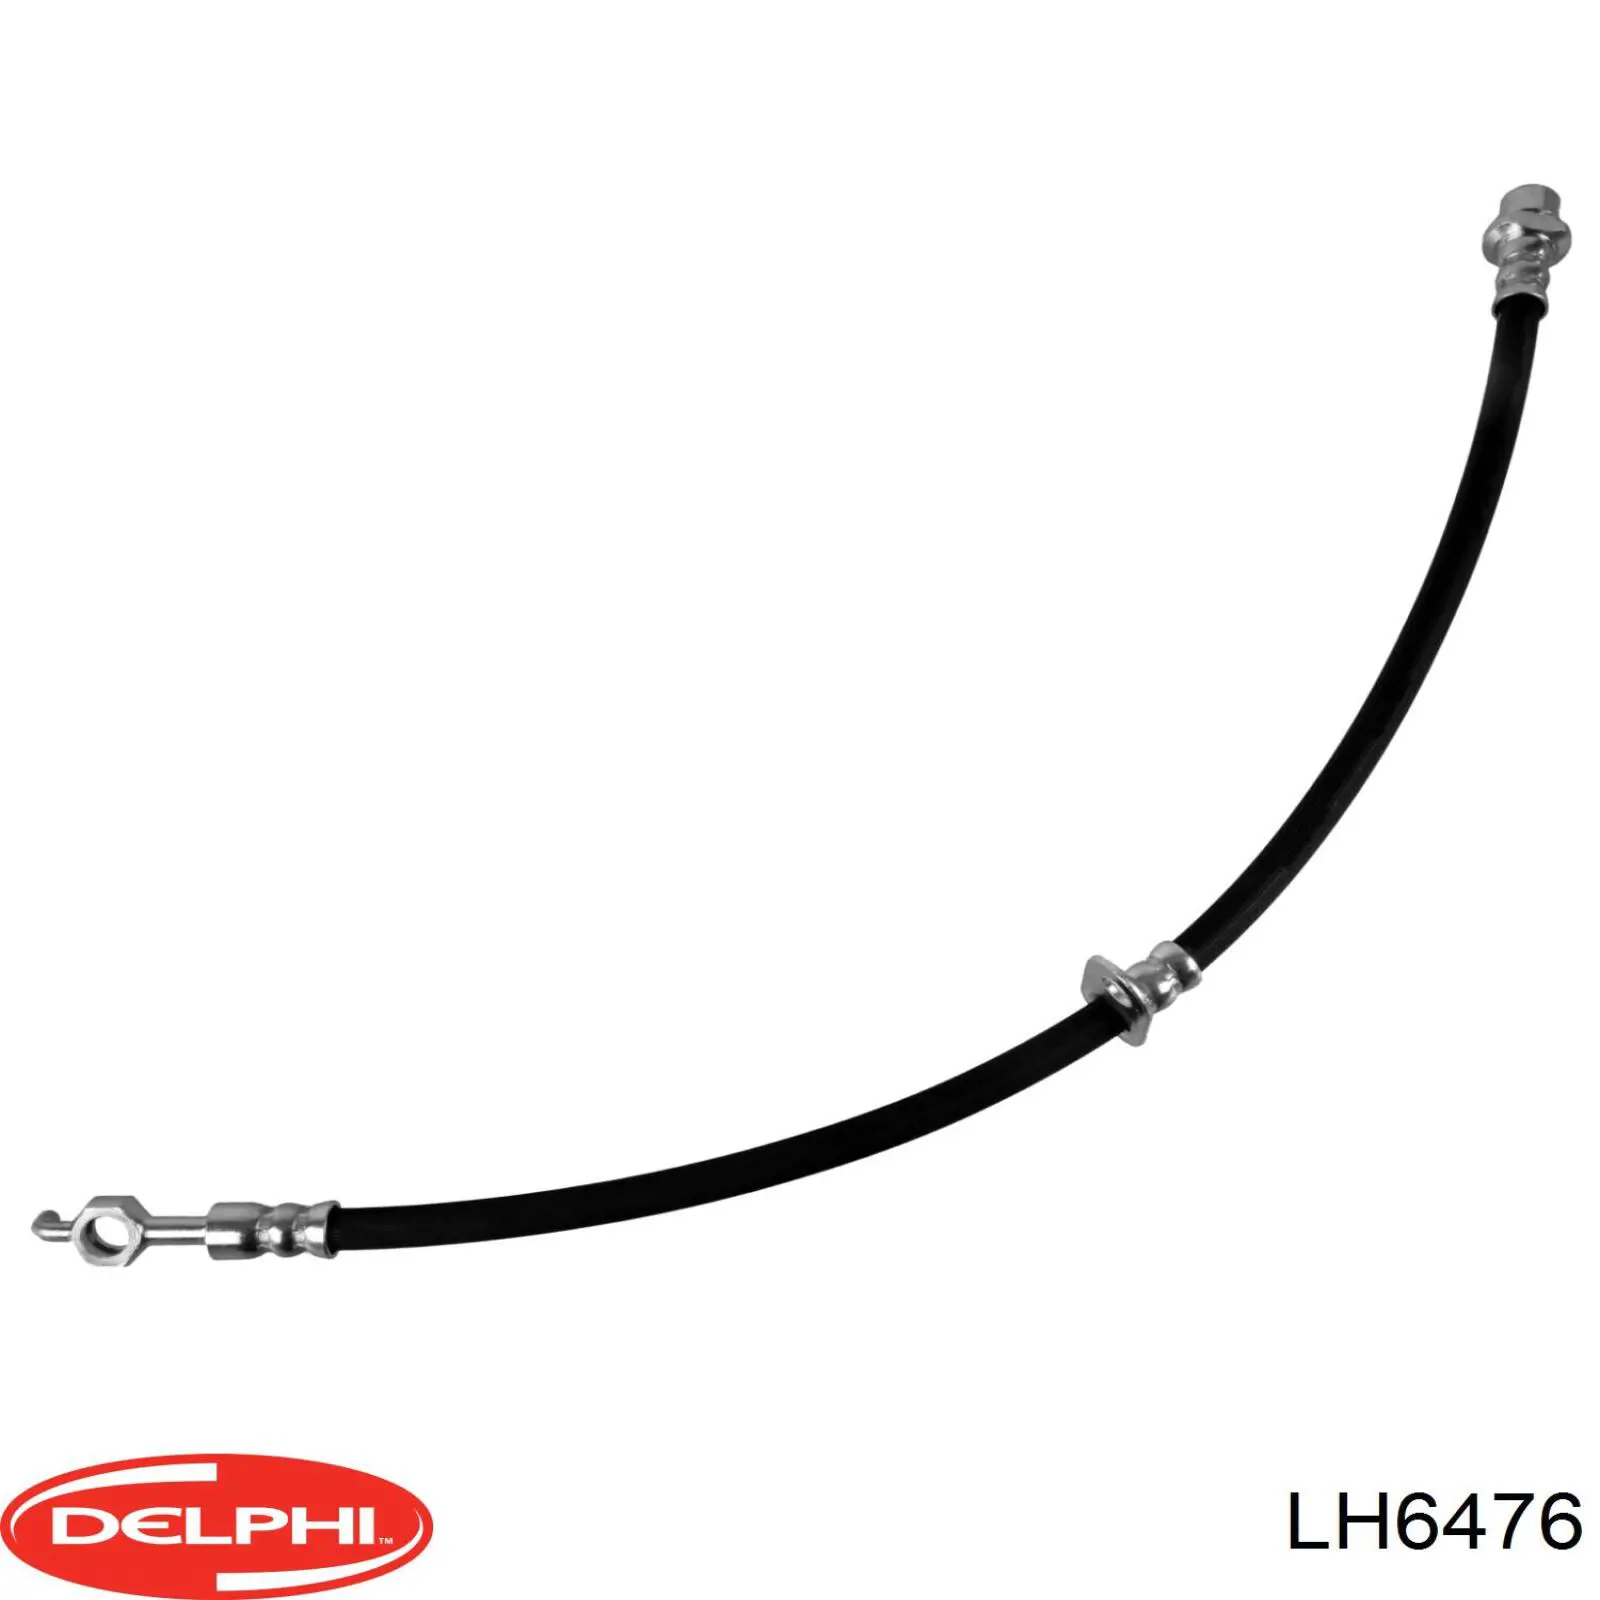 LH6476 Delphi latiguillos de freno delantero izquierdo